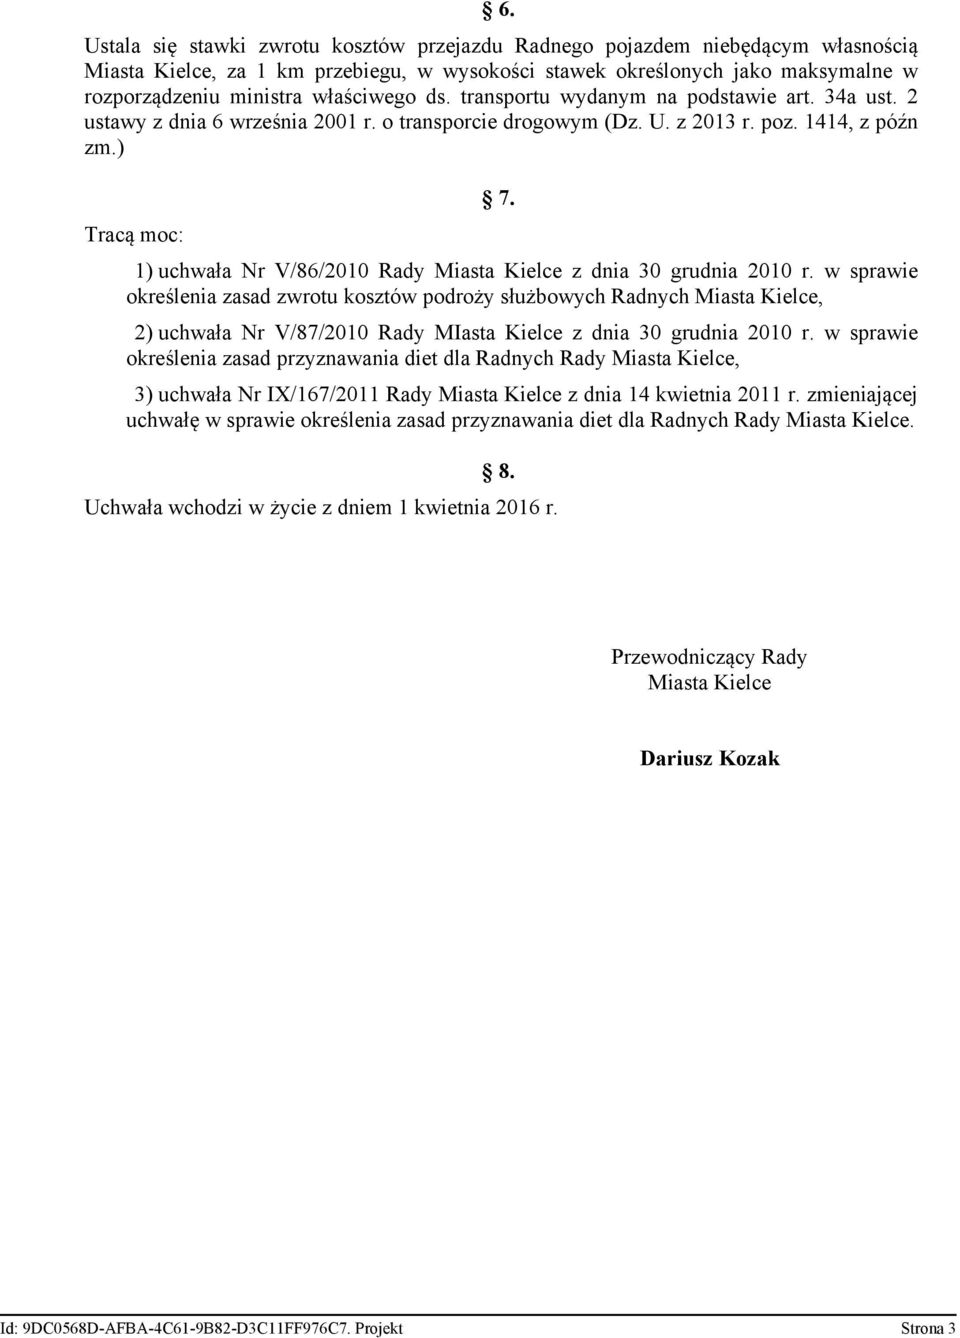 1) uchwała Nr V/86/2010 Rady Miasta Kielce z dnia 30 grudnia 2010 r.